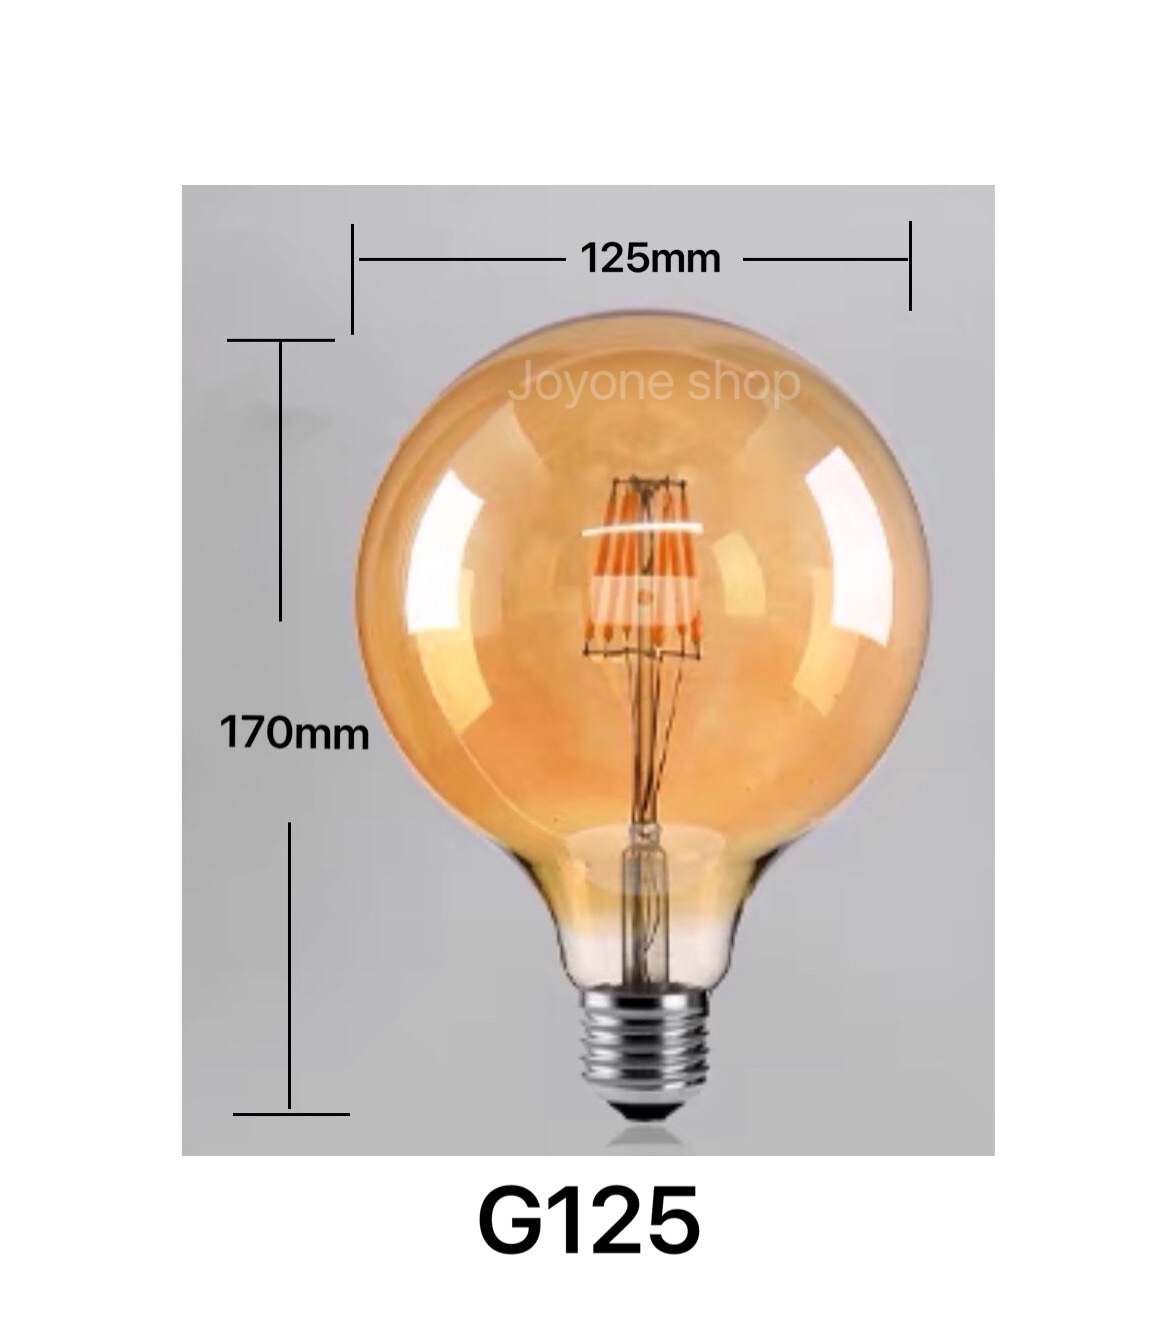 หลอดไฟวินเทจ หลอด ST64 G95 LED E27 Filament ฟิลาเมนต์ ทรงเอดิสัน4w/8W แสงวอร์ม สี G125 4W สี G125 4W